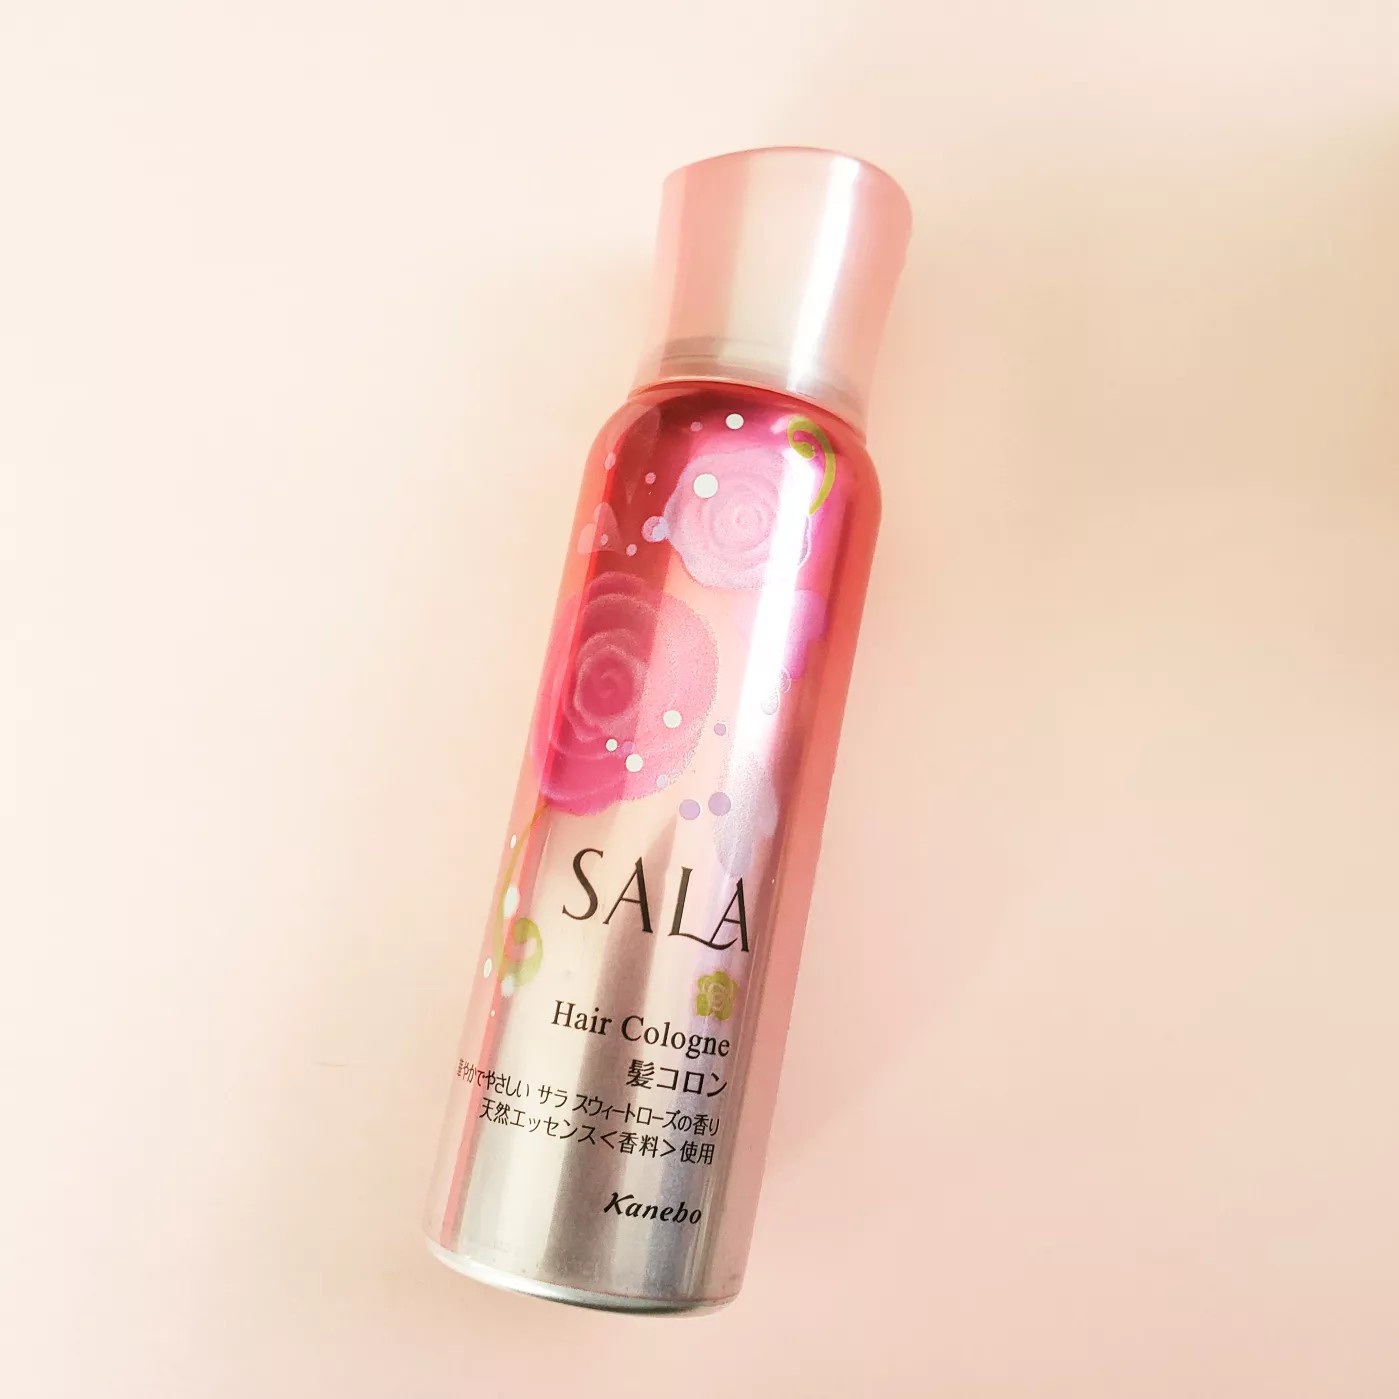 SALA(サラ) / 髪コロンB(サラ スウィートローズの香り)の公式